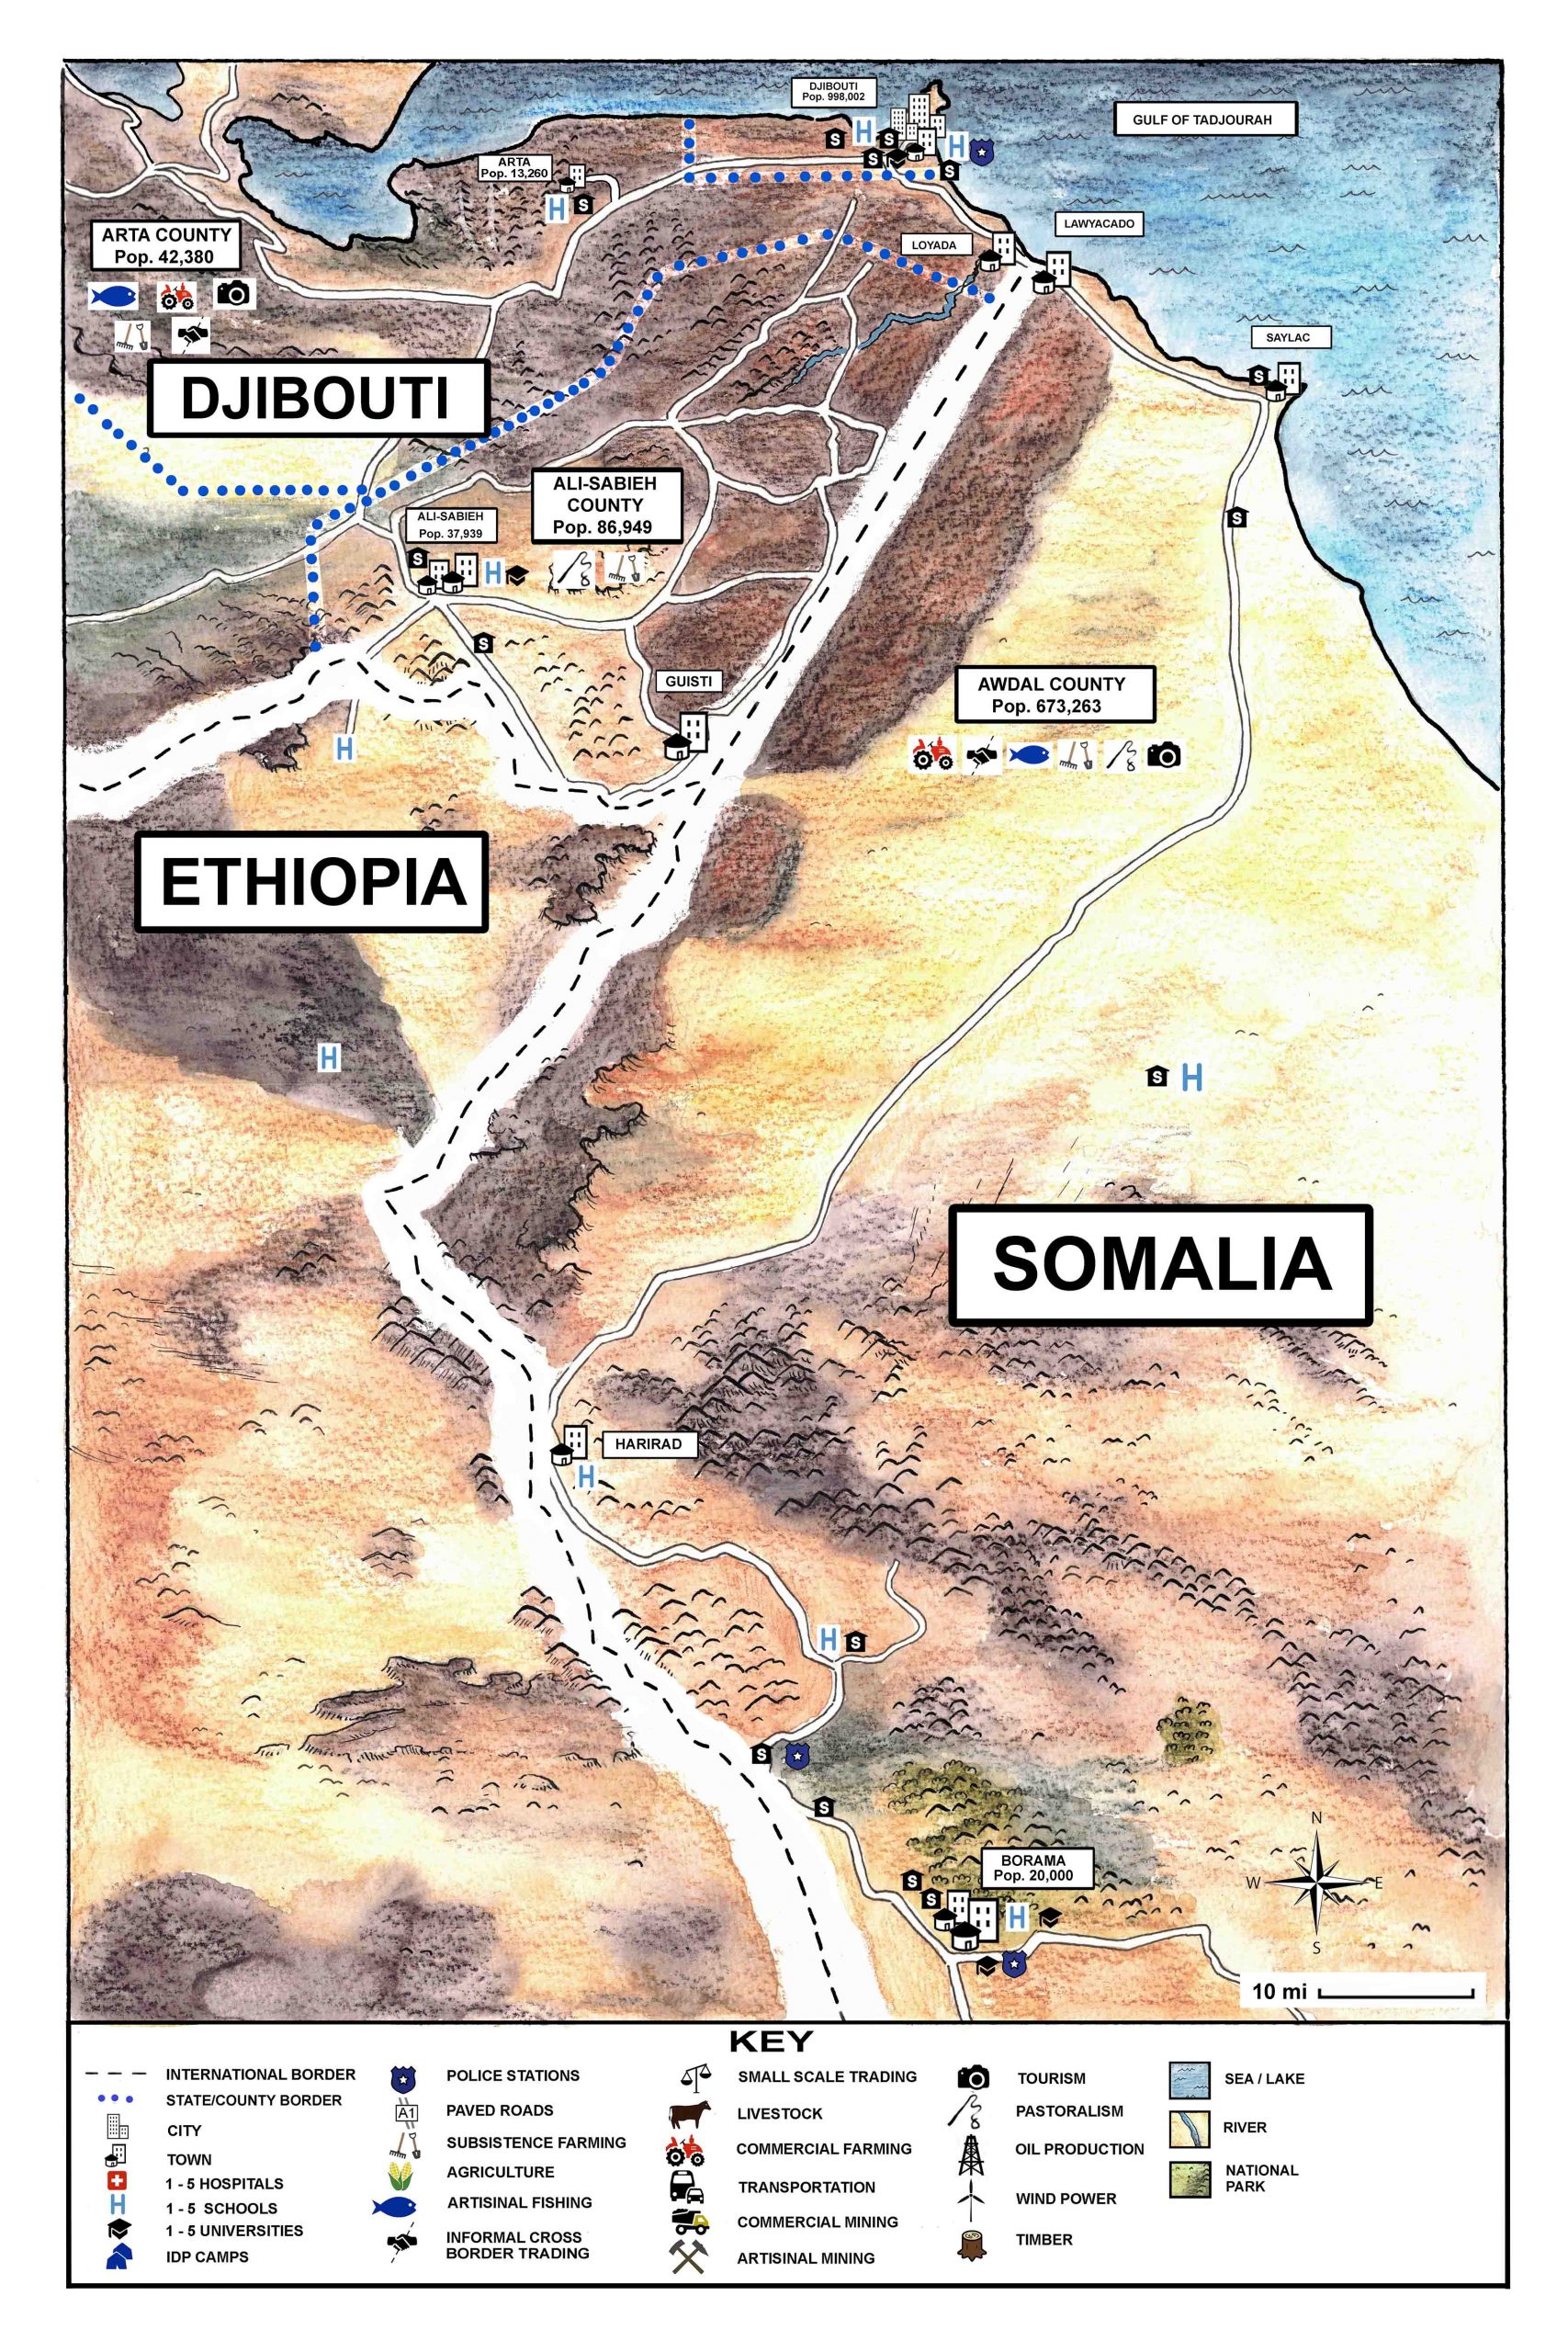 DJIBOUTI - SOMALIA_illustration